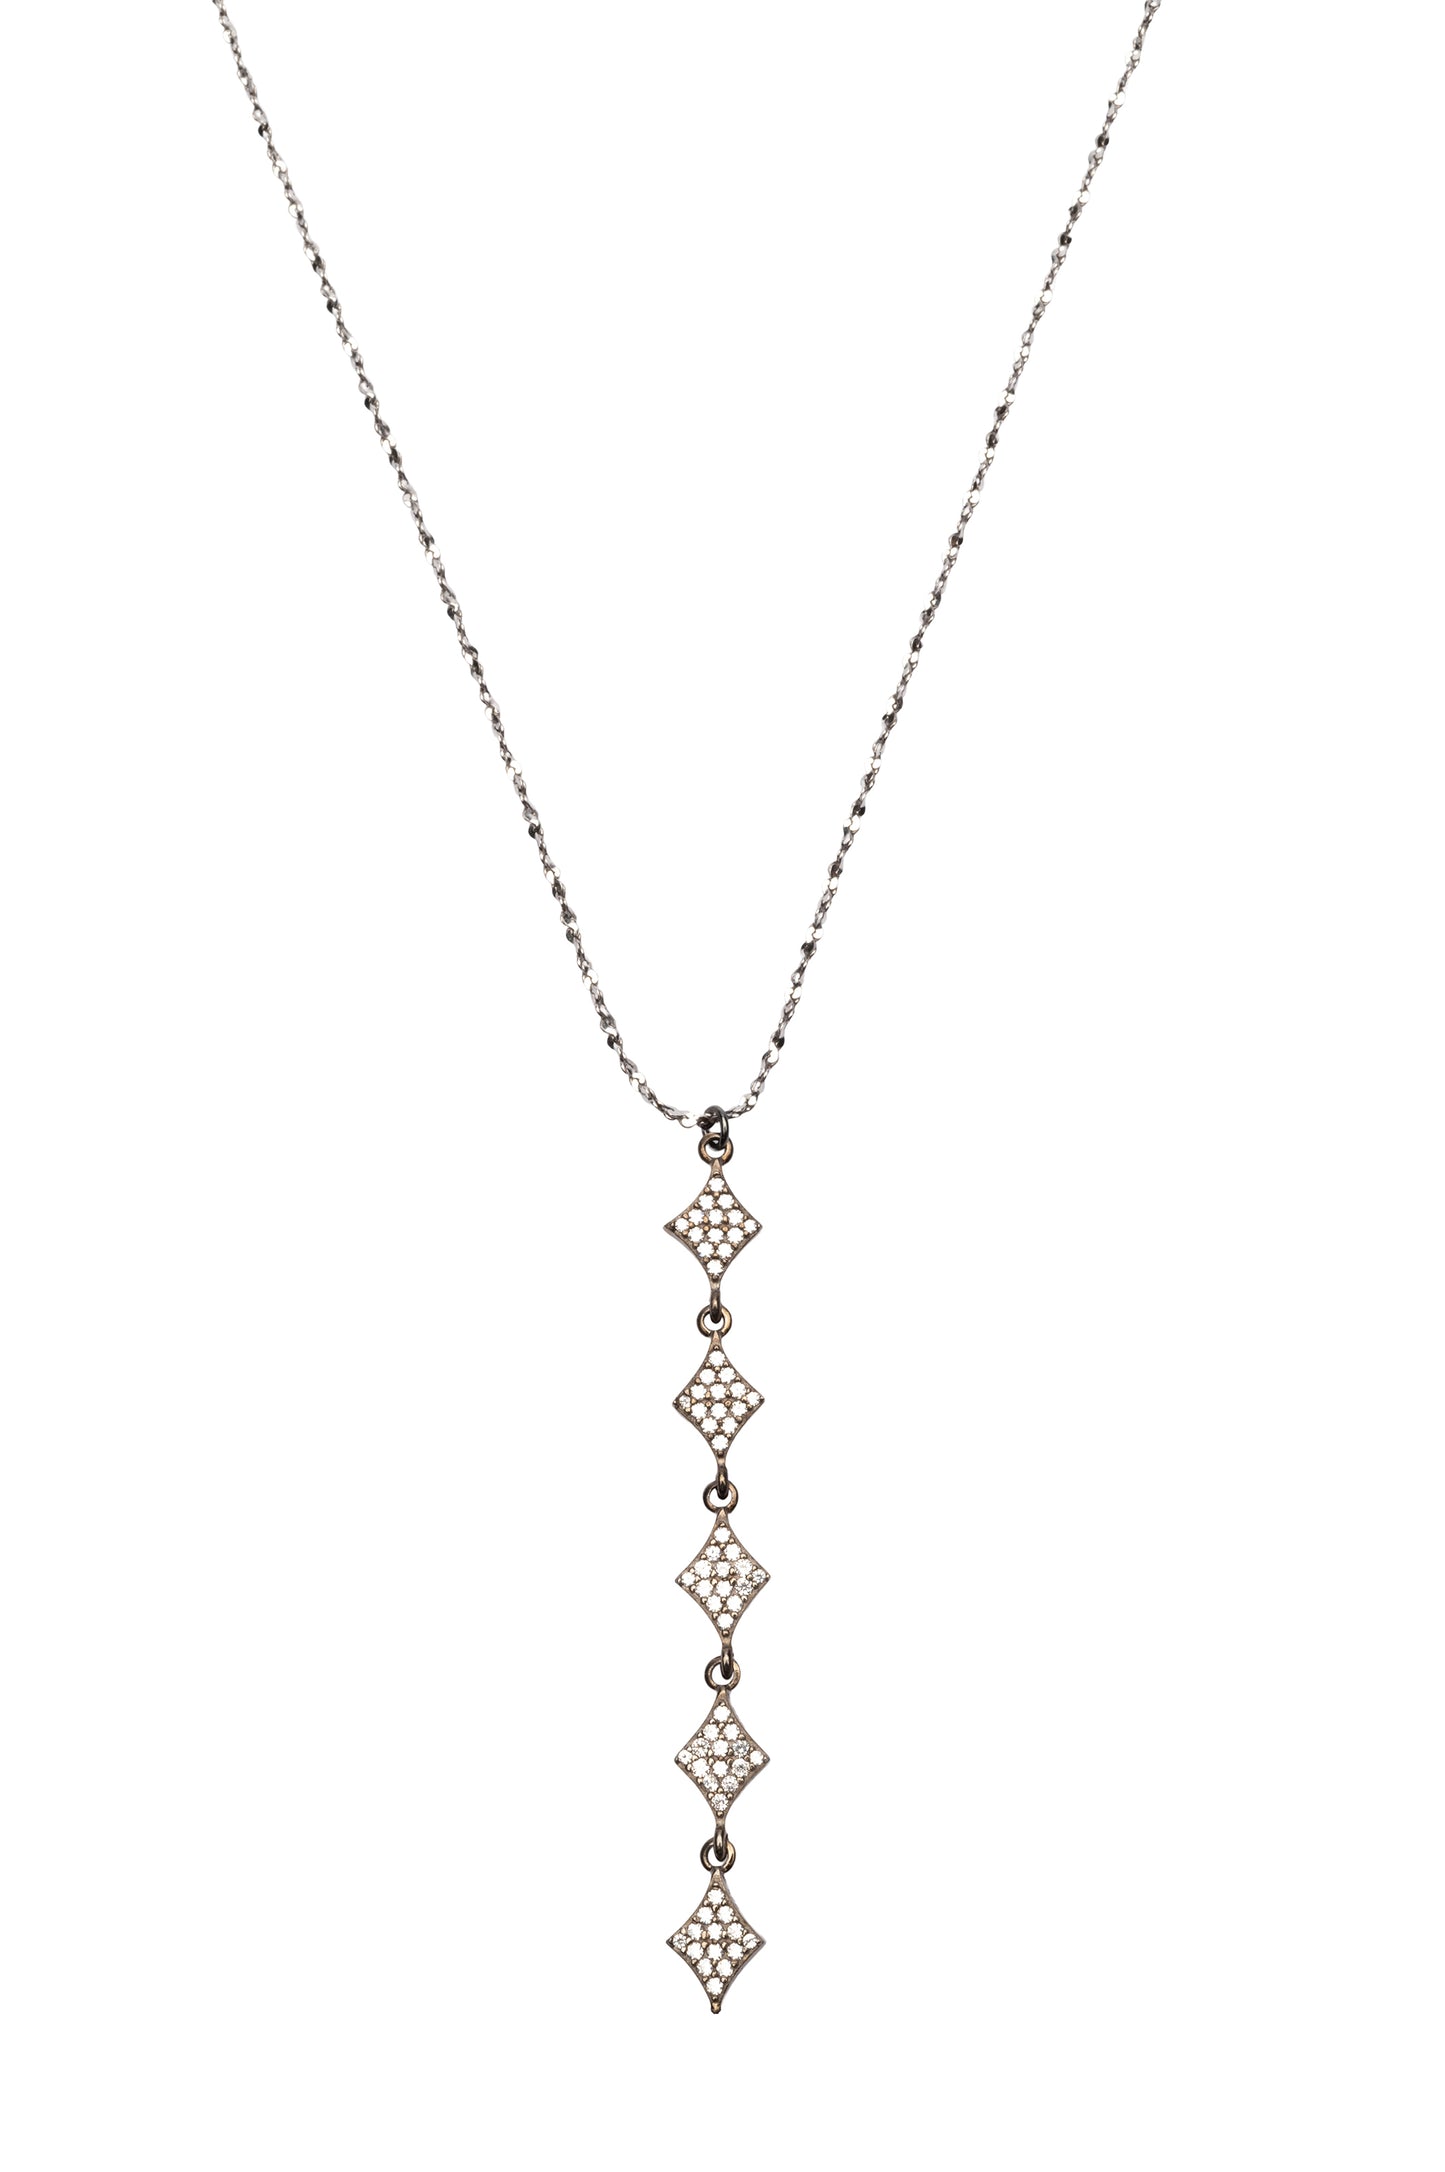 Long Rhombus Necklace - Antique